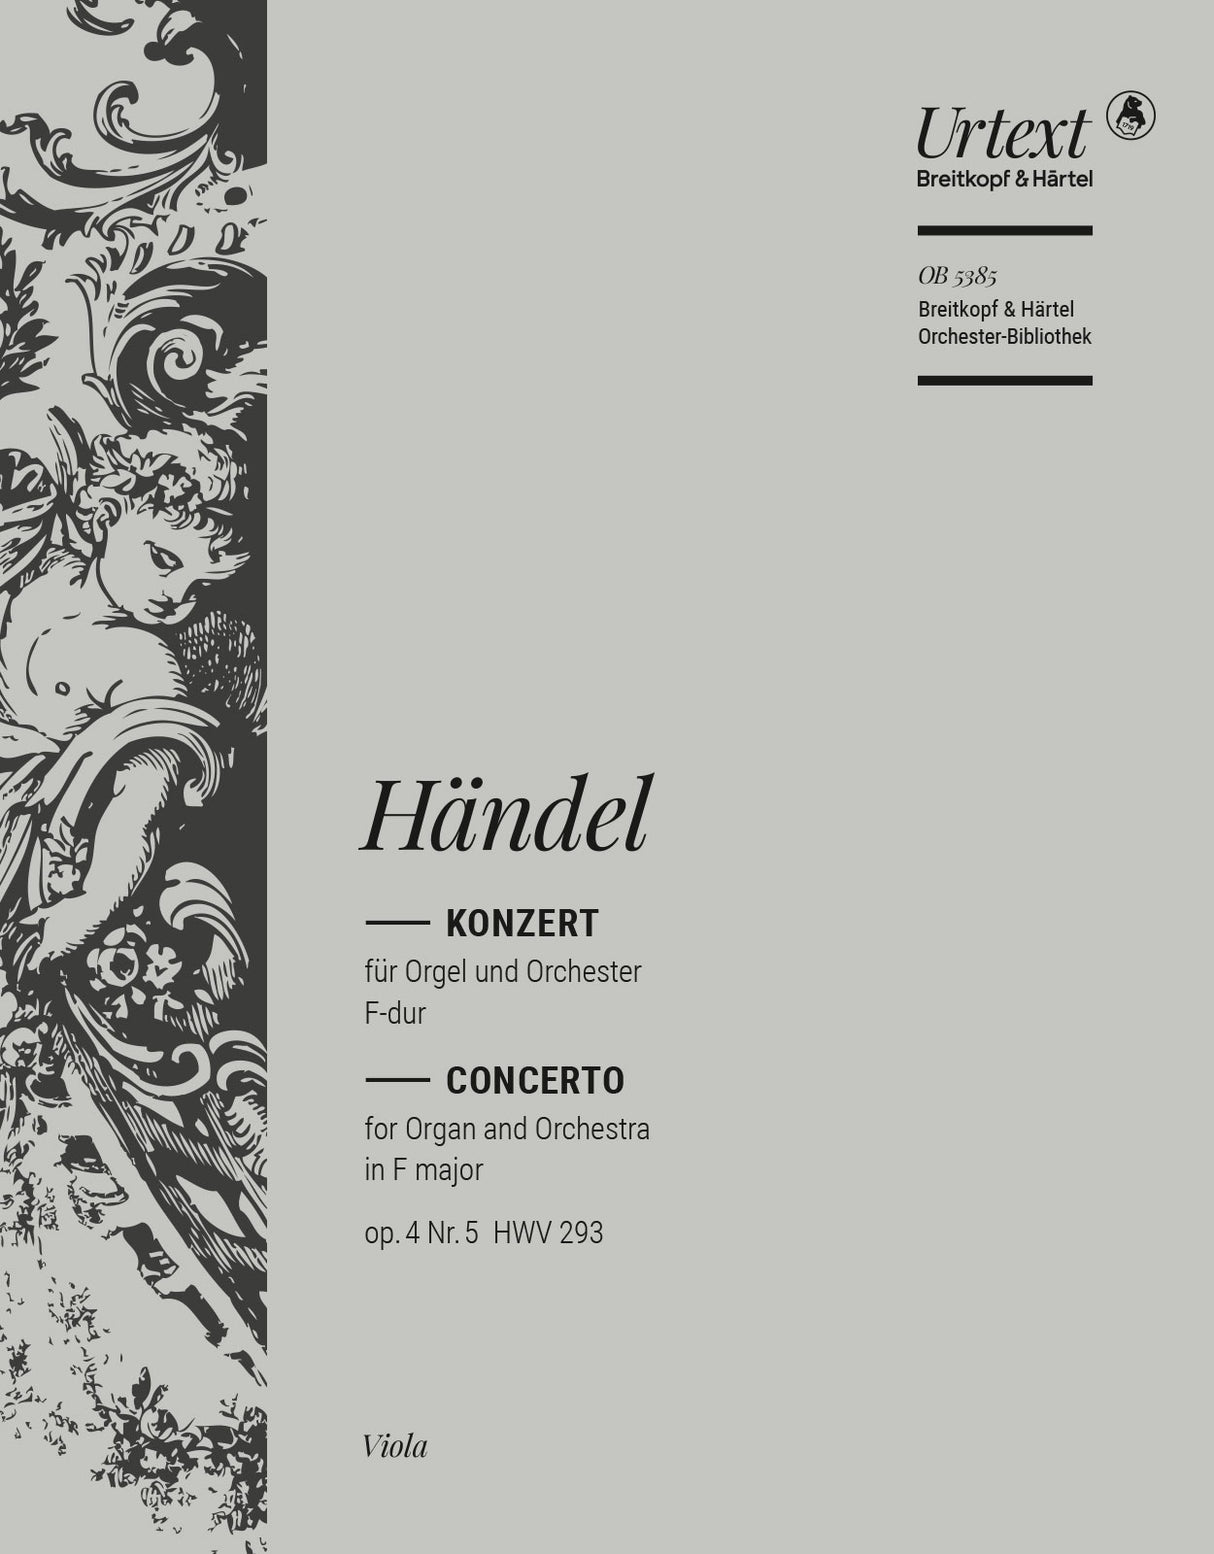 Handel: Organ Concerto in F Major, HWV 293, Op. 4, No. 5